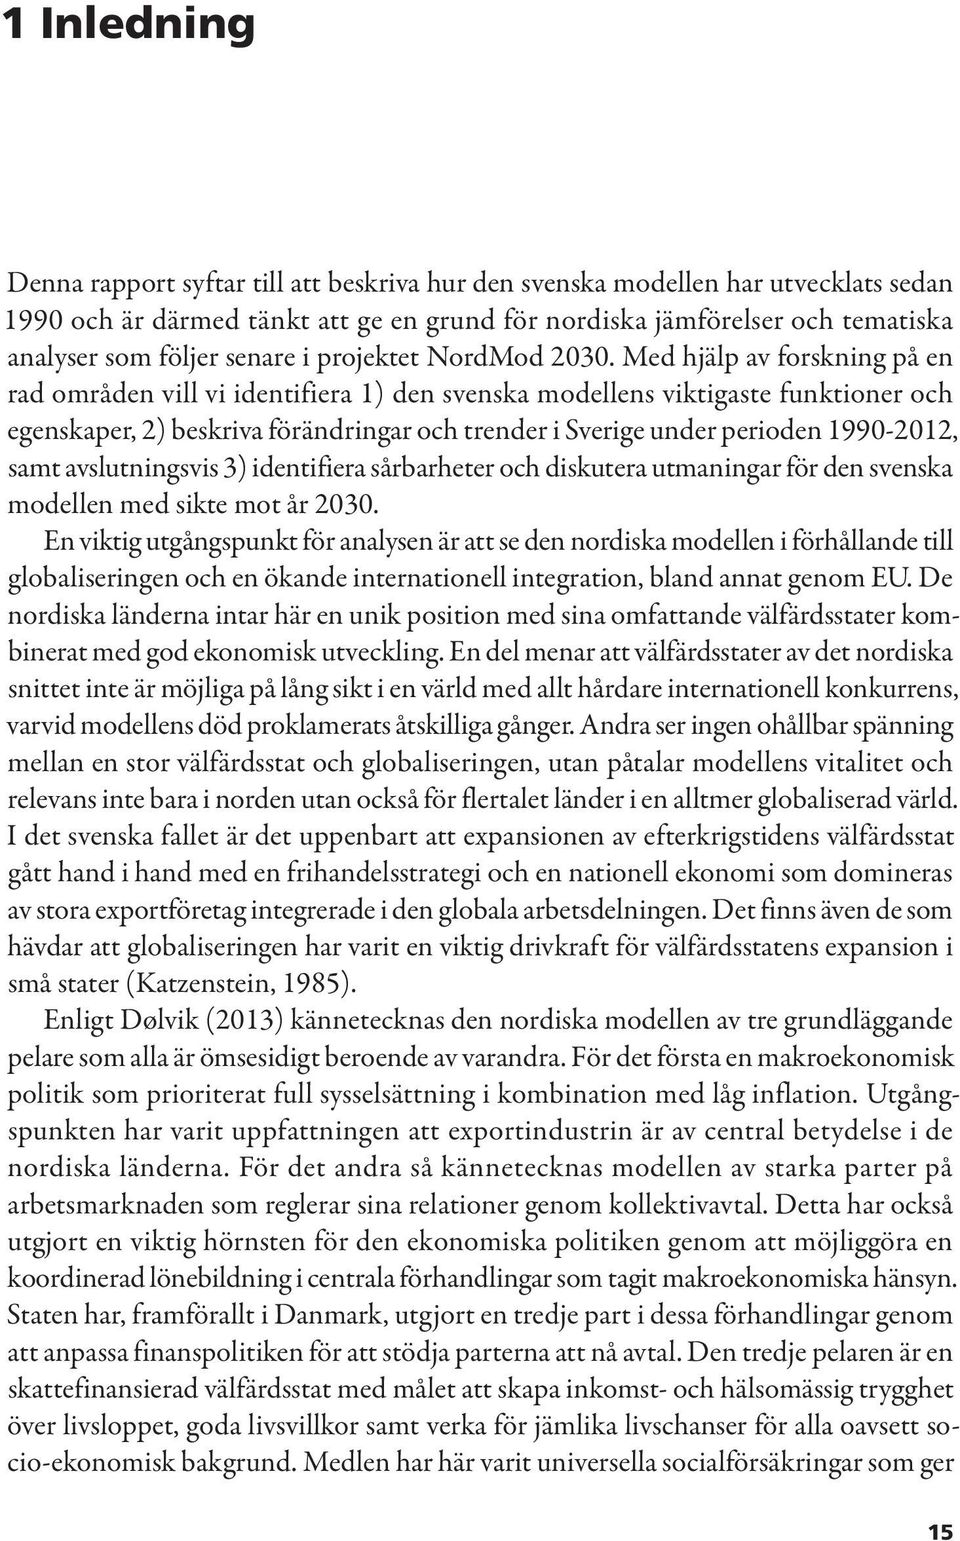 Med hjälp av forskning på en rad områden vill vi identifiera 1) den svenska modellens viktigaste funktioner och egenskaper, 2) beskriva förändringar och trender i Sverige under perioden 1990-2012,